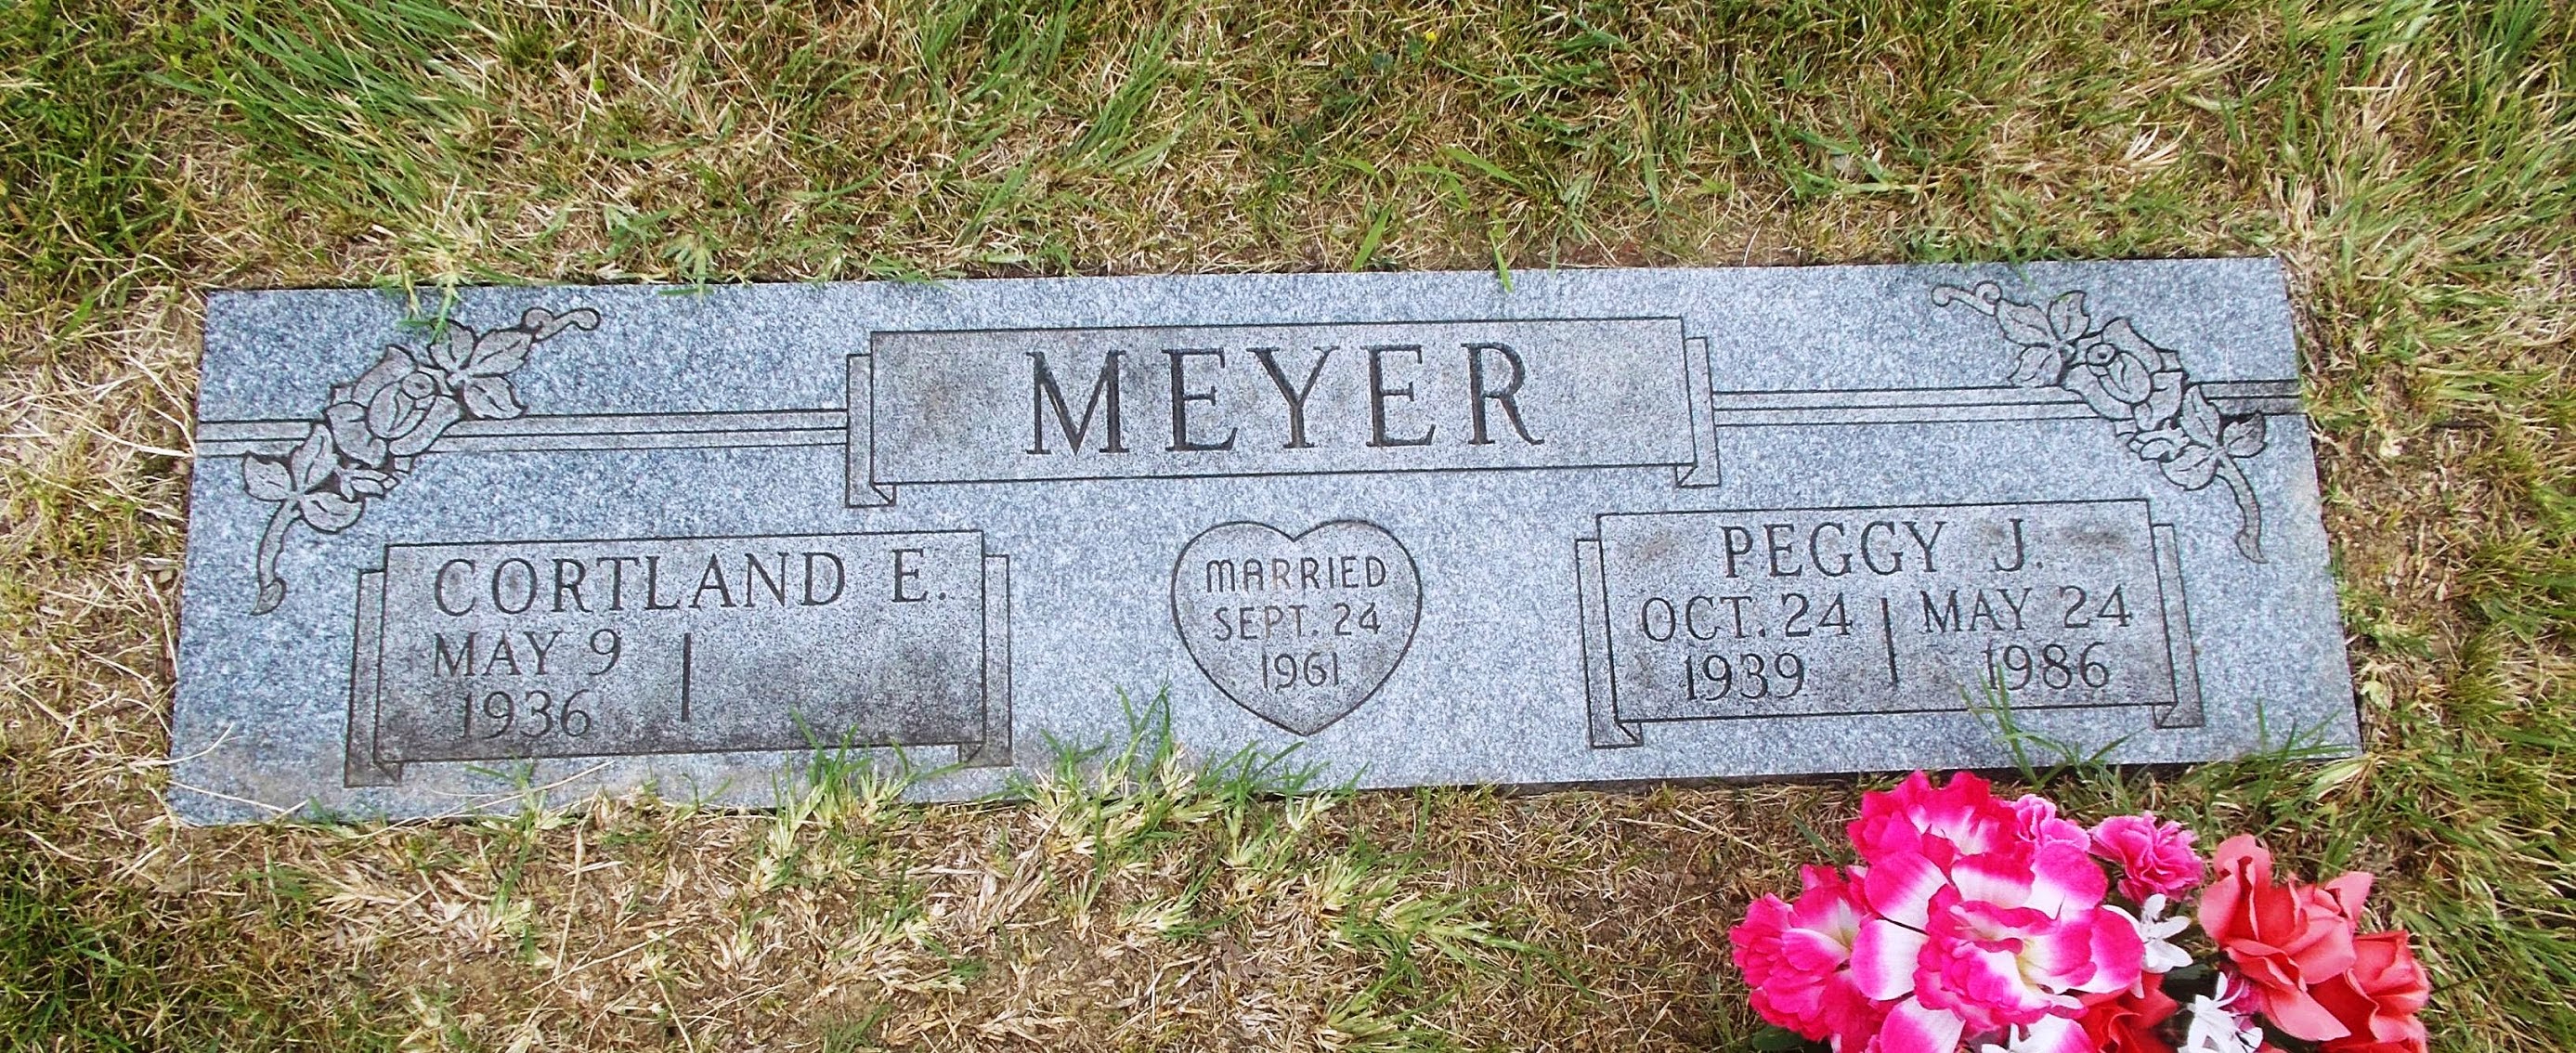 Peggy J Meyer